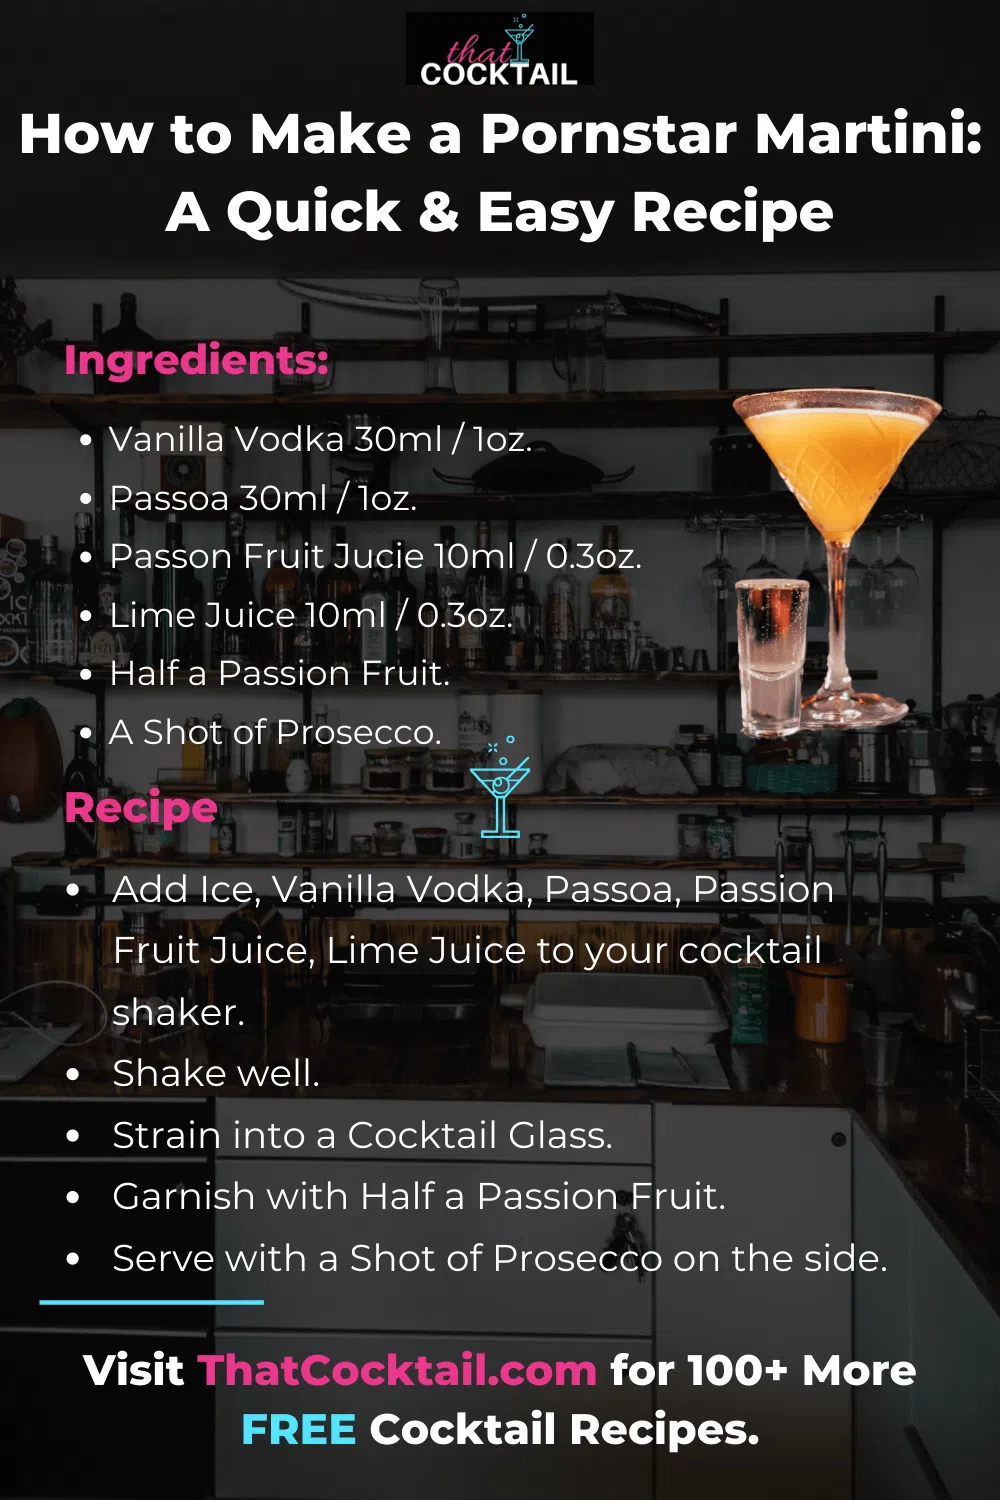 How to Make a Pornstar Martini infographic.